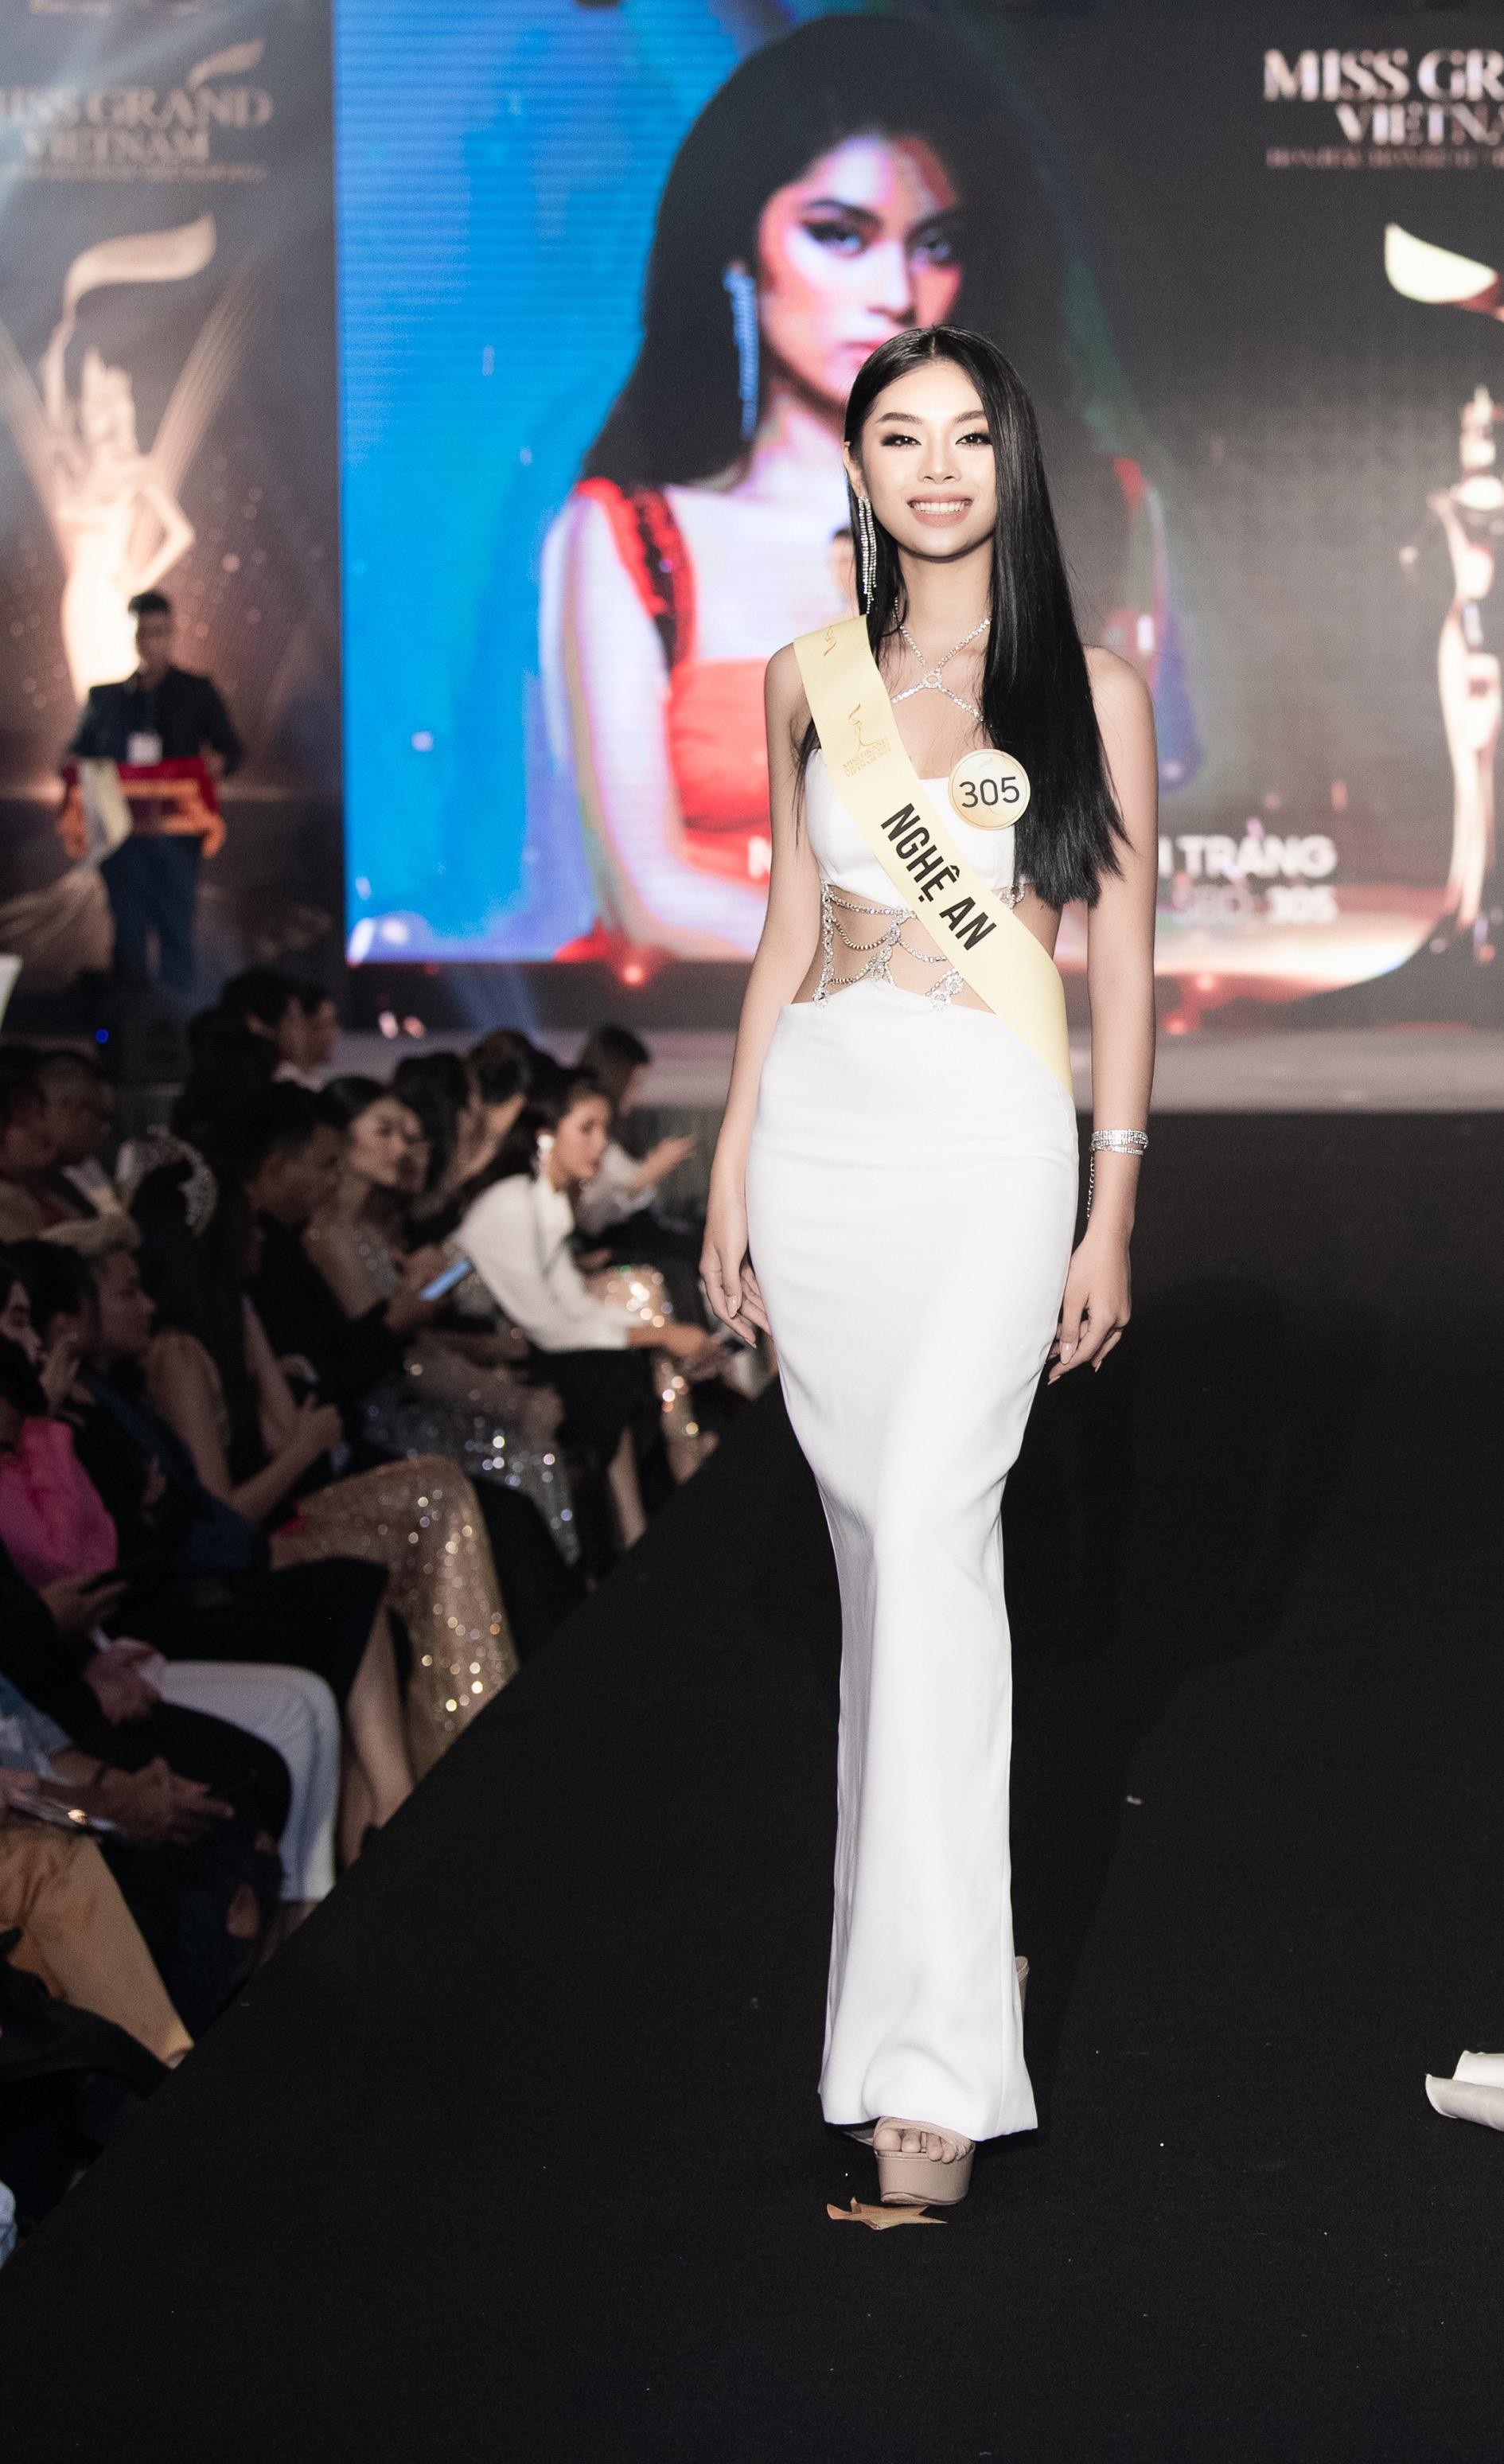 Mai Ngô, Quỳnh Châu tung chiêu catwalk độc đáo tại lễ nhận sash của Miss Grand Vietnam 2022-10